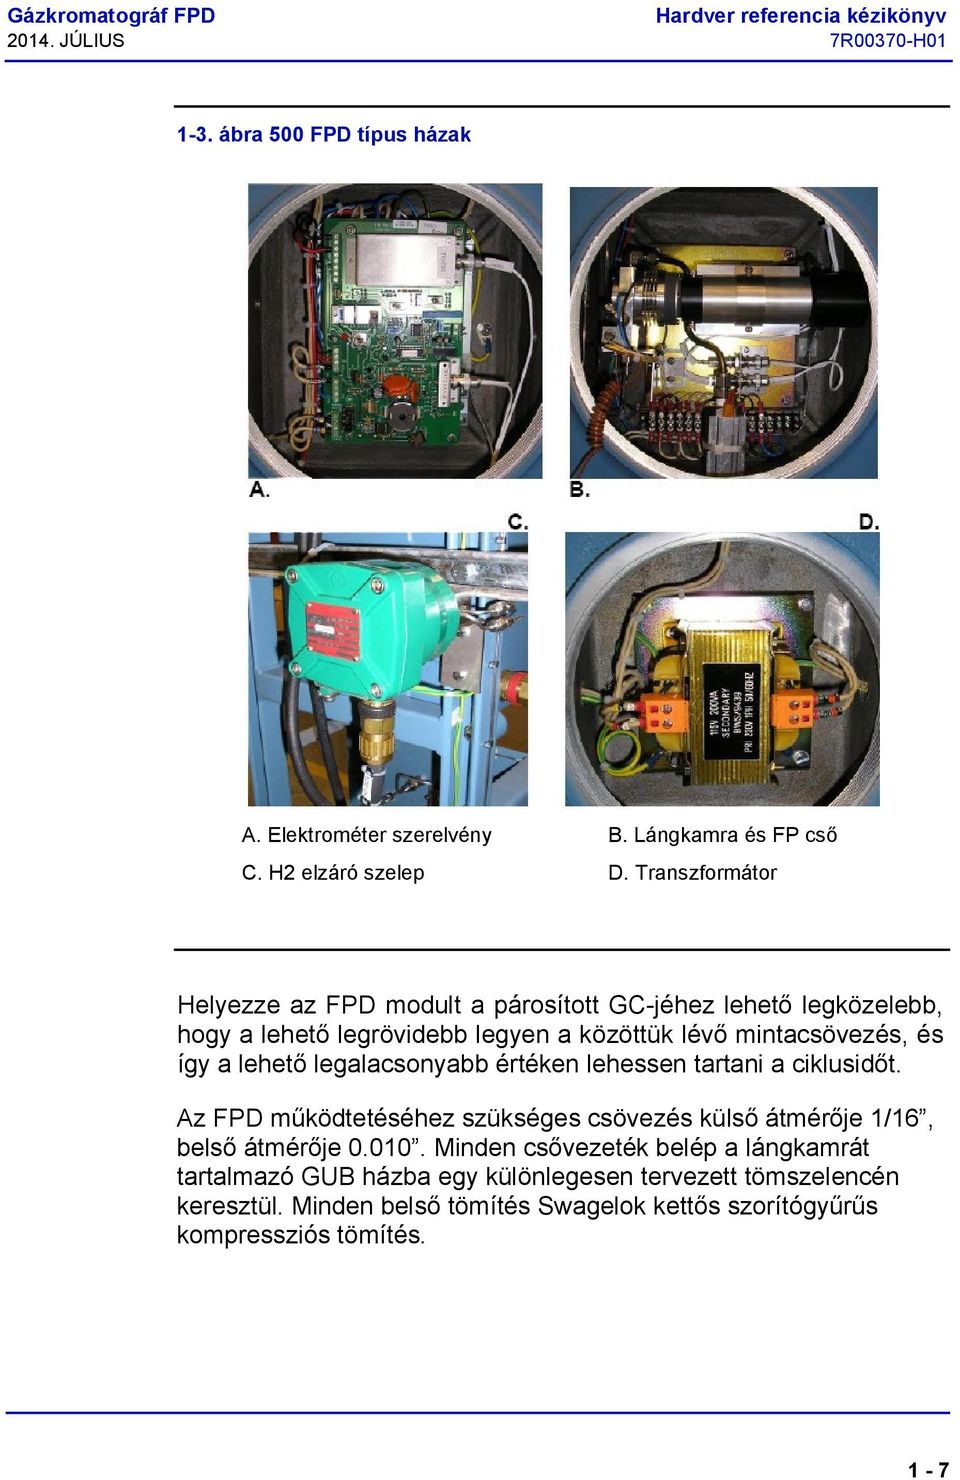 Gázkromatográf lángfotometriás detektor (FPD) Hardver referencia kézikönyv.  A változat 7R00370-H július - PDF Ingyenes letöltés